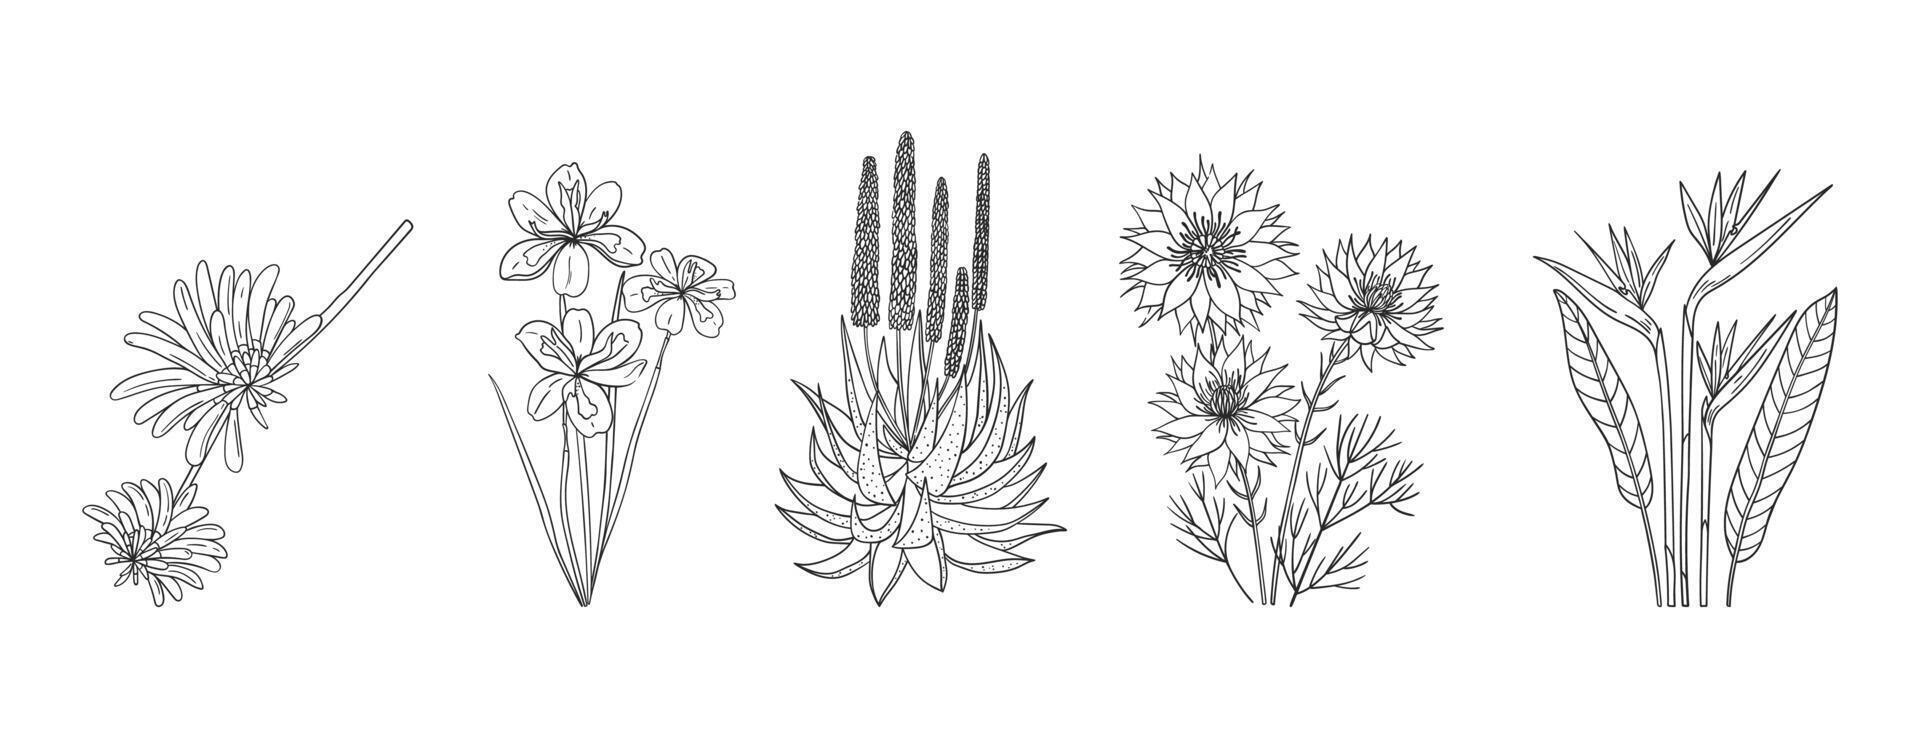 conjunto de mano dibujado africano nativo plantas y flores vector